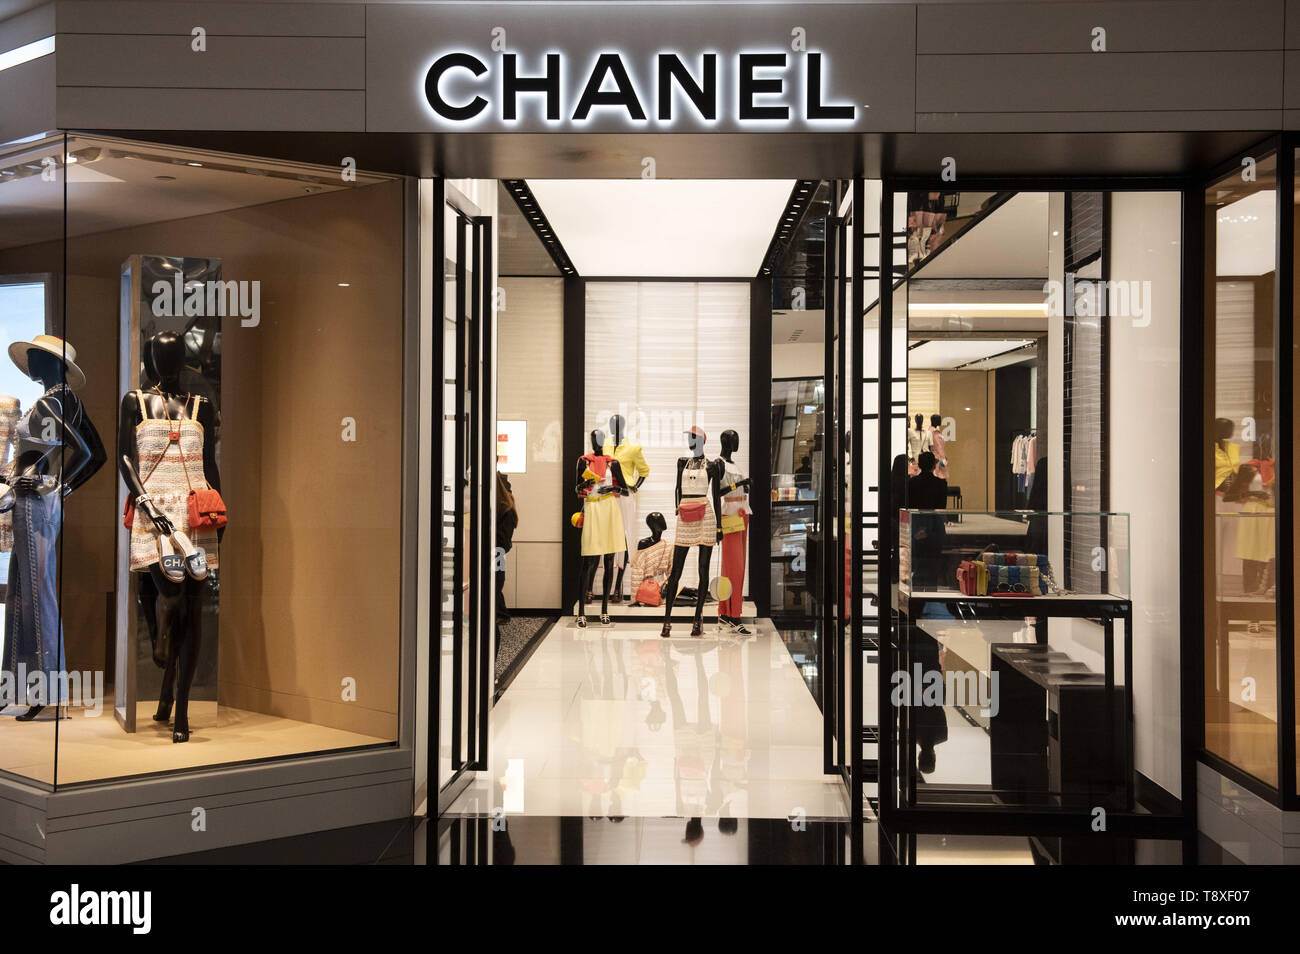 Mayo 8, 2019 - Hong Kong - multinacional francesa Chanel ropa y productos de belleza tienda de marca se ve en Hong Kong. (Crédito de la Imagen: © Budrul Chukrut/sopa